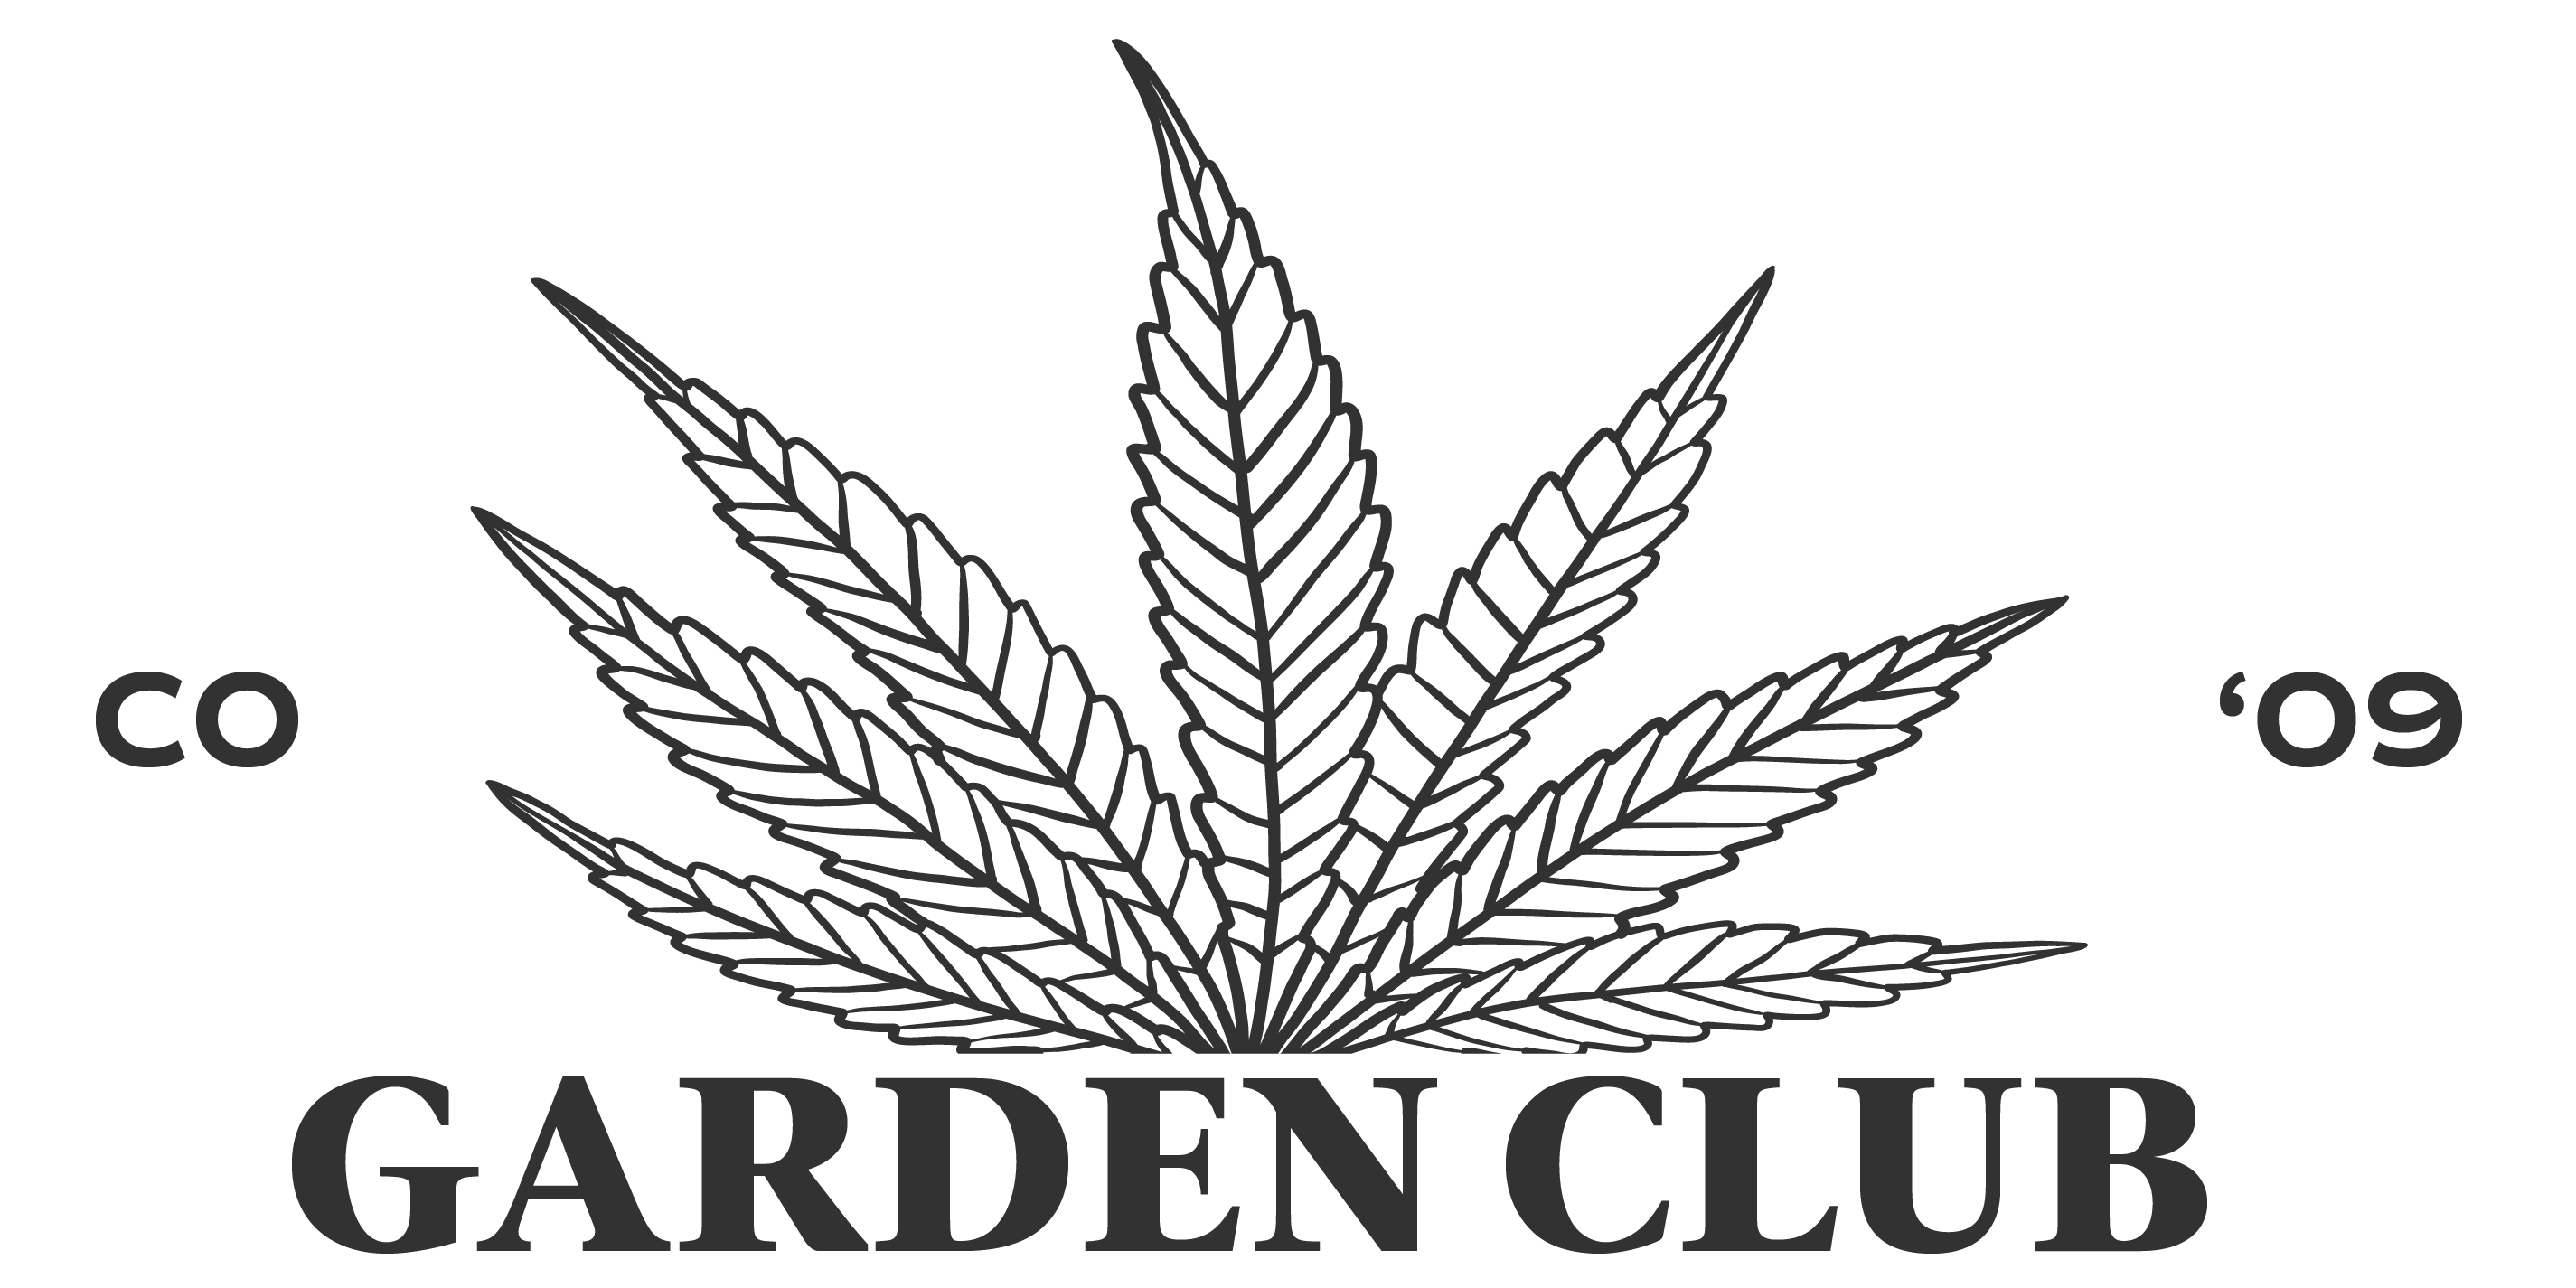 The Garden Club logo, cannabis flower, established 2009